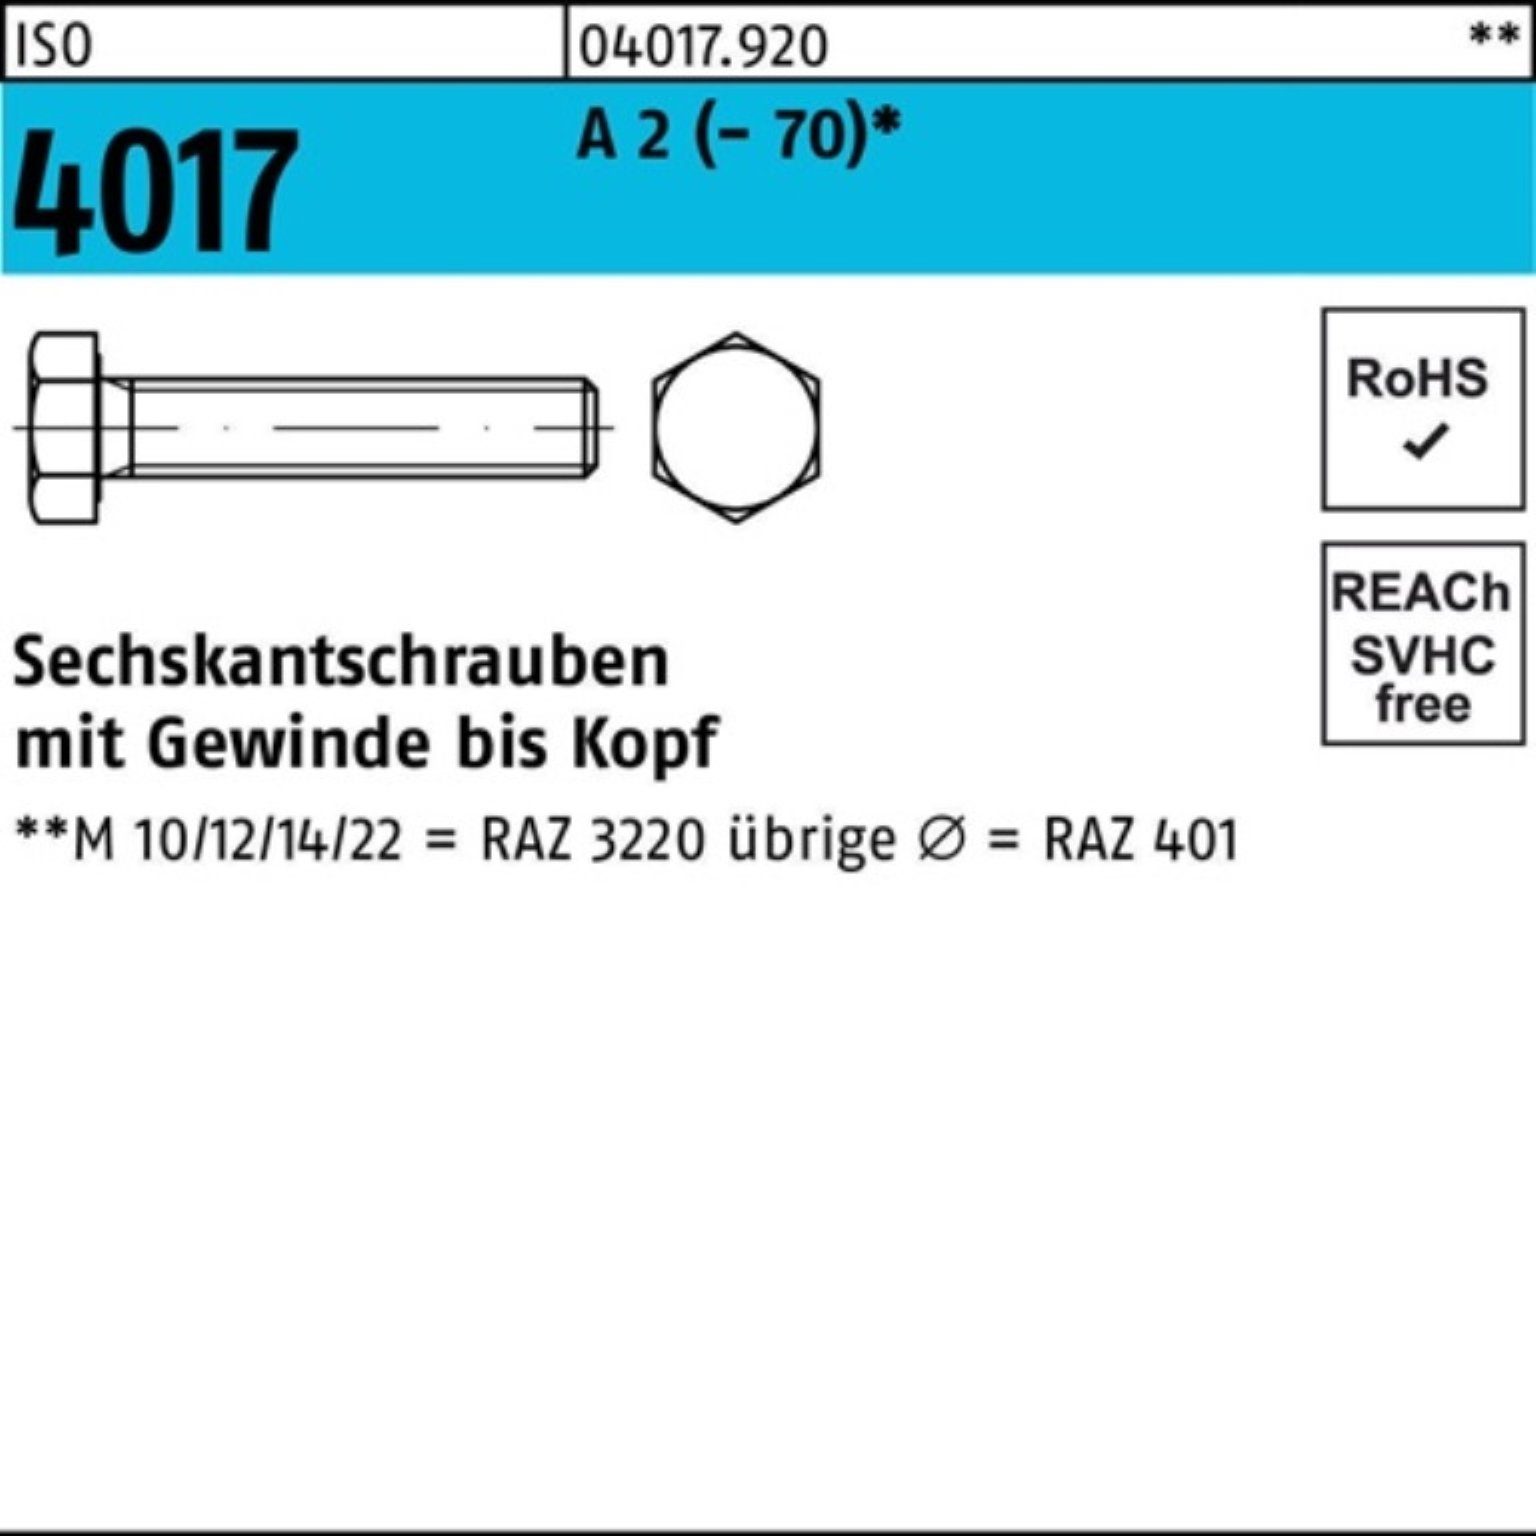 Bufab Sechskantschraube 100er Pack Sechskantschraube ISO 4017 VG M20x 120 A 2 (70) 10 Stück